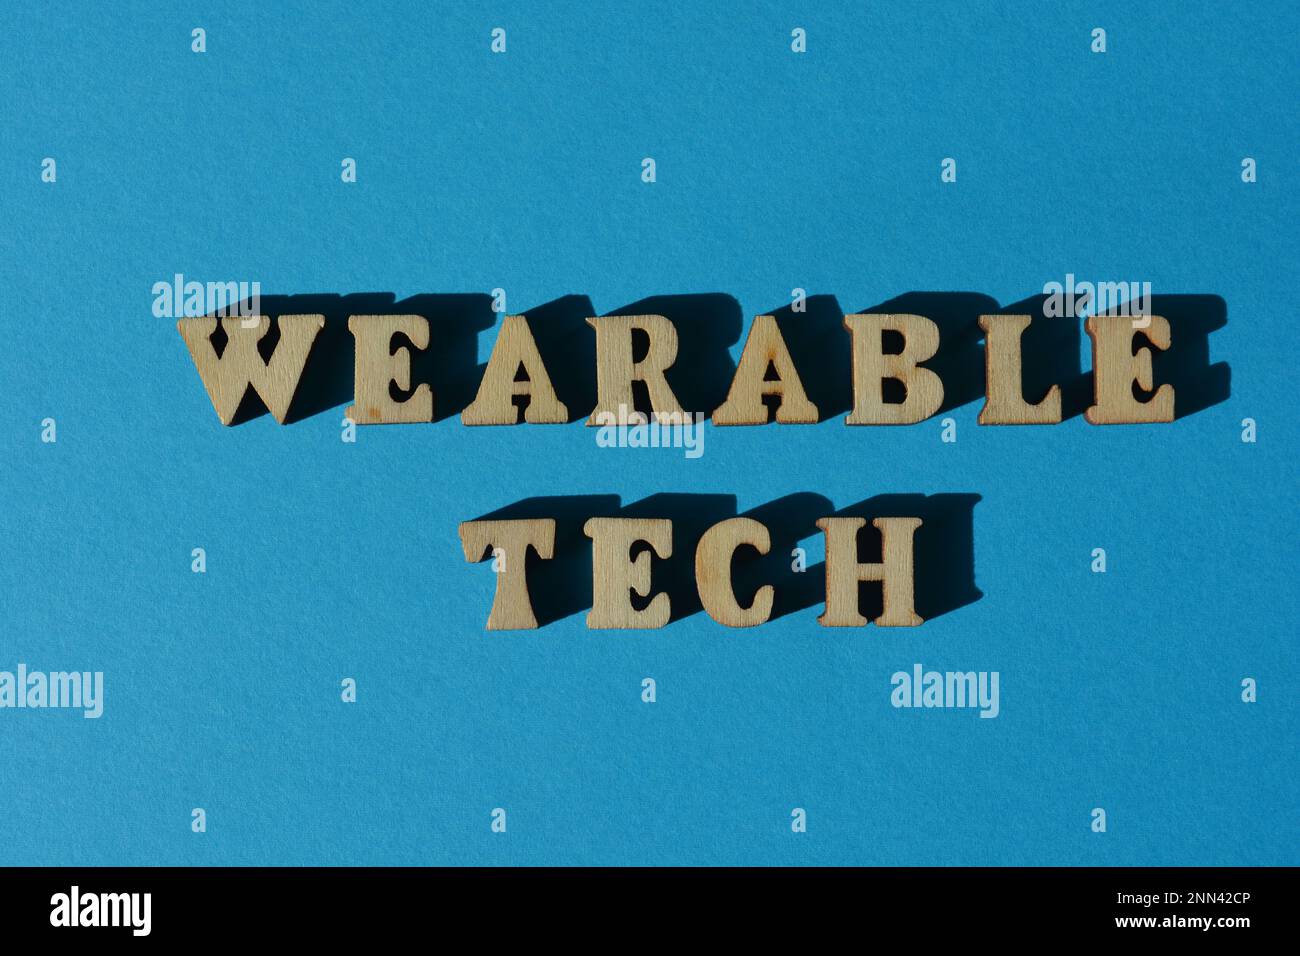 Wearable Tech, palabras en letras de alfabeto de madera aisladas sobre fondo azul Foto de stock